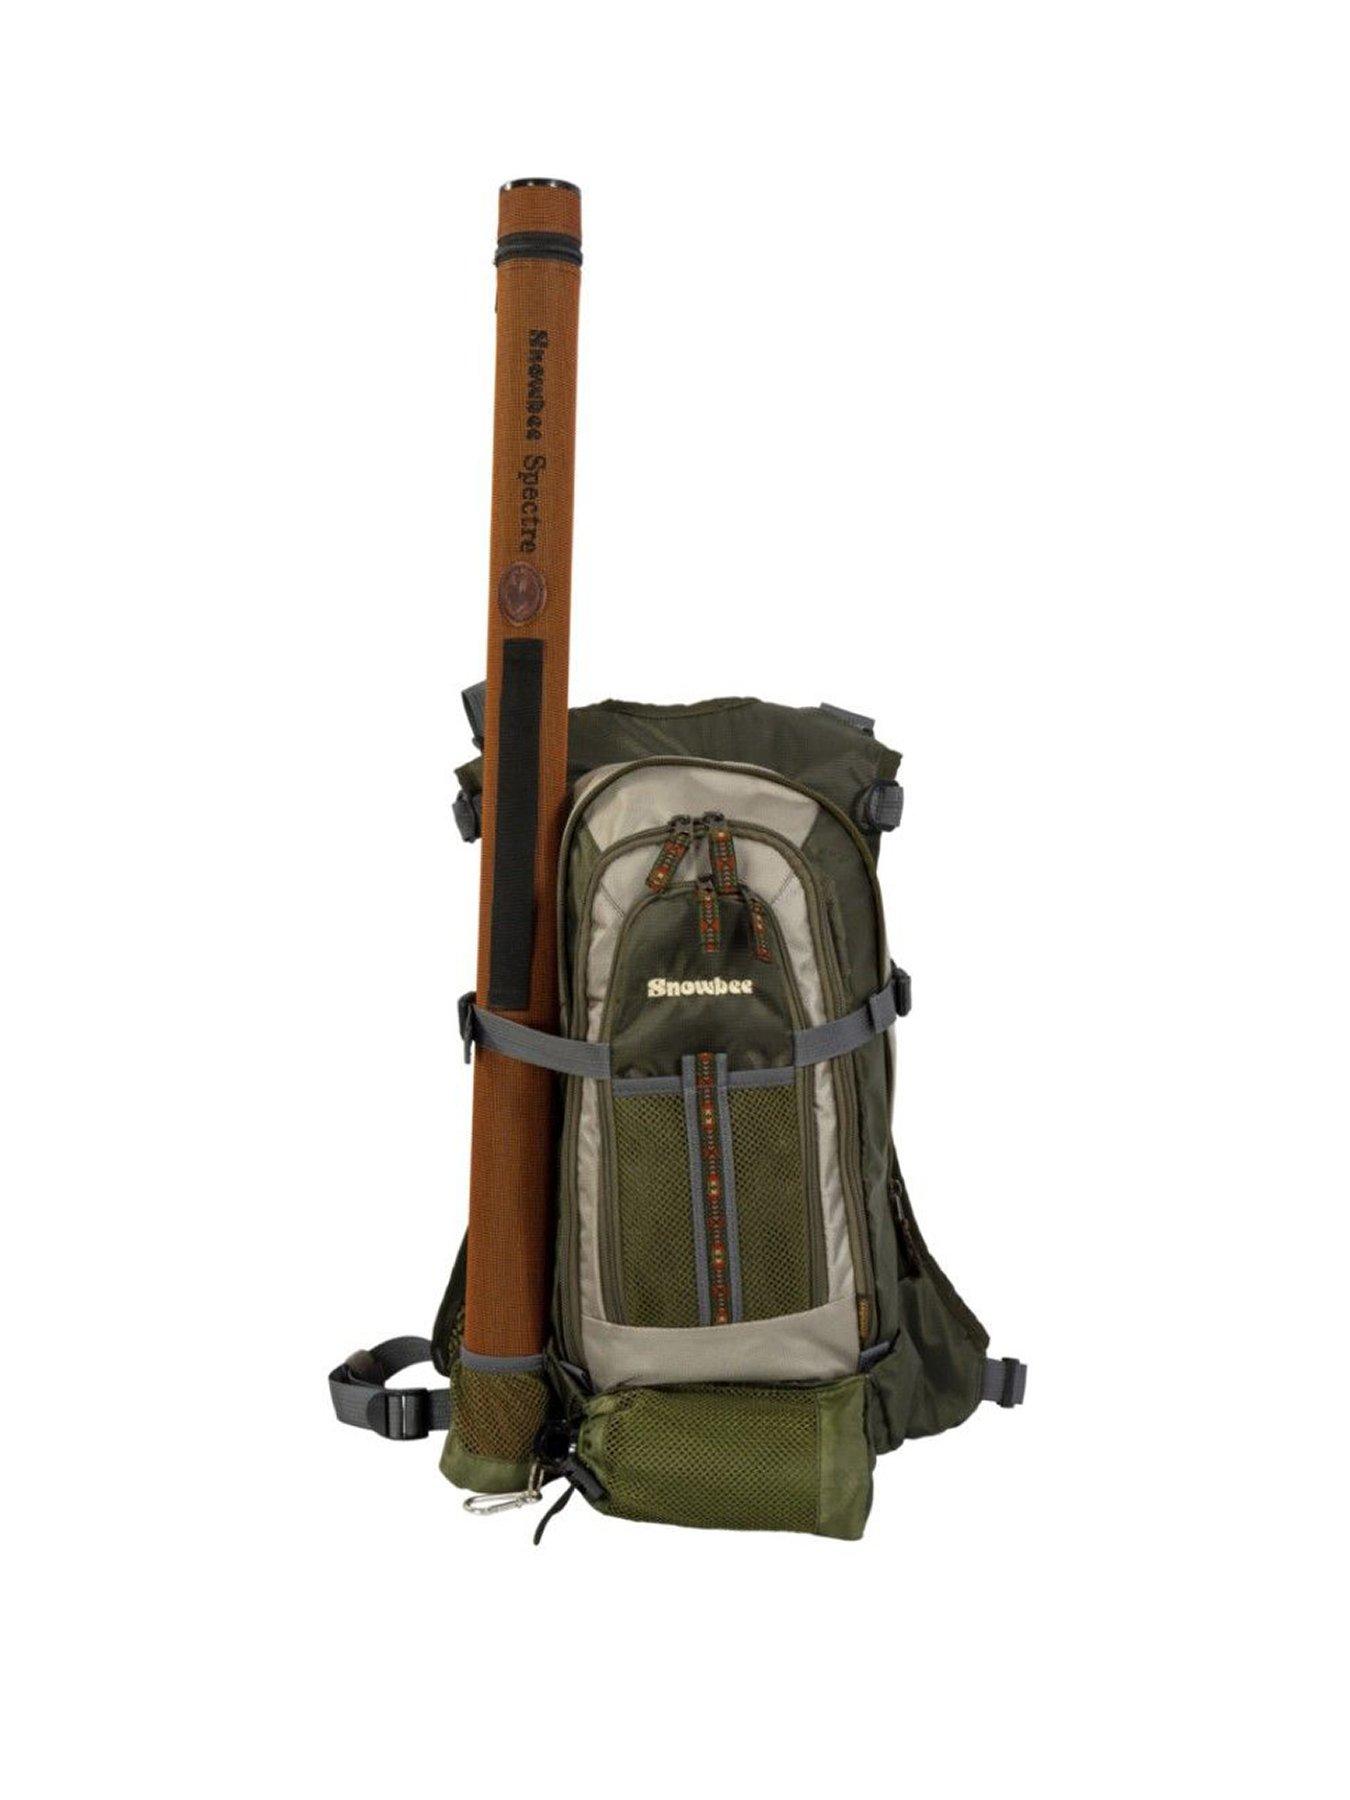 OD Green)Fishing Vest Pack 8 Pockets Fly Fishing Vest Adjustable Strap For